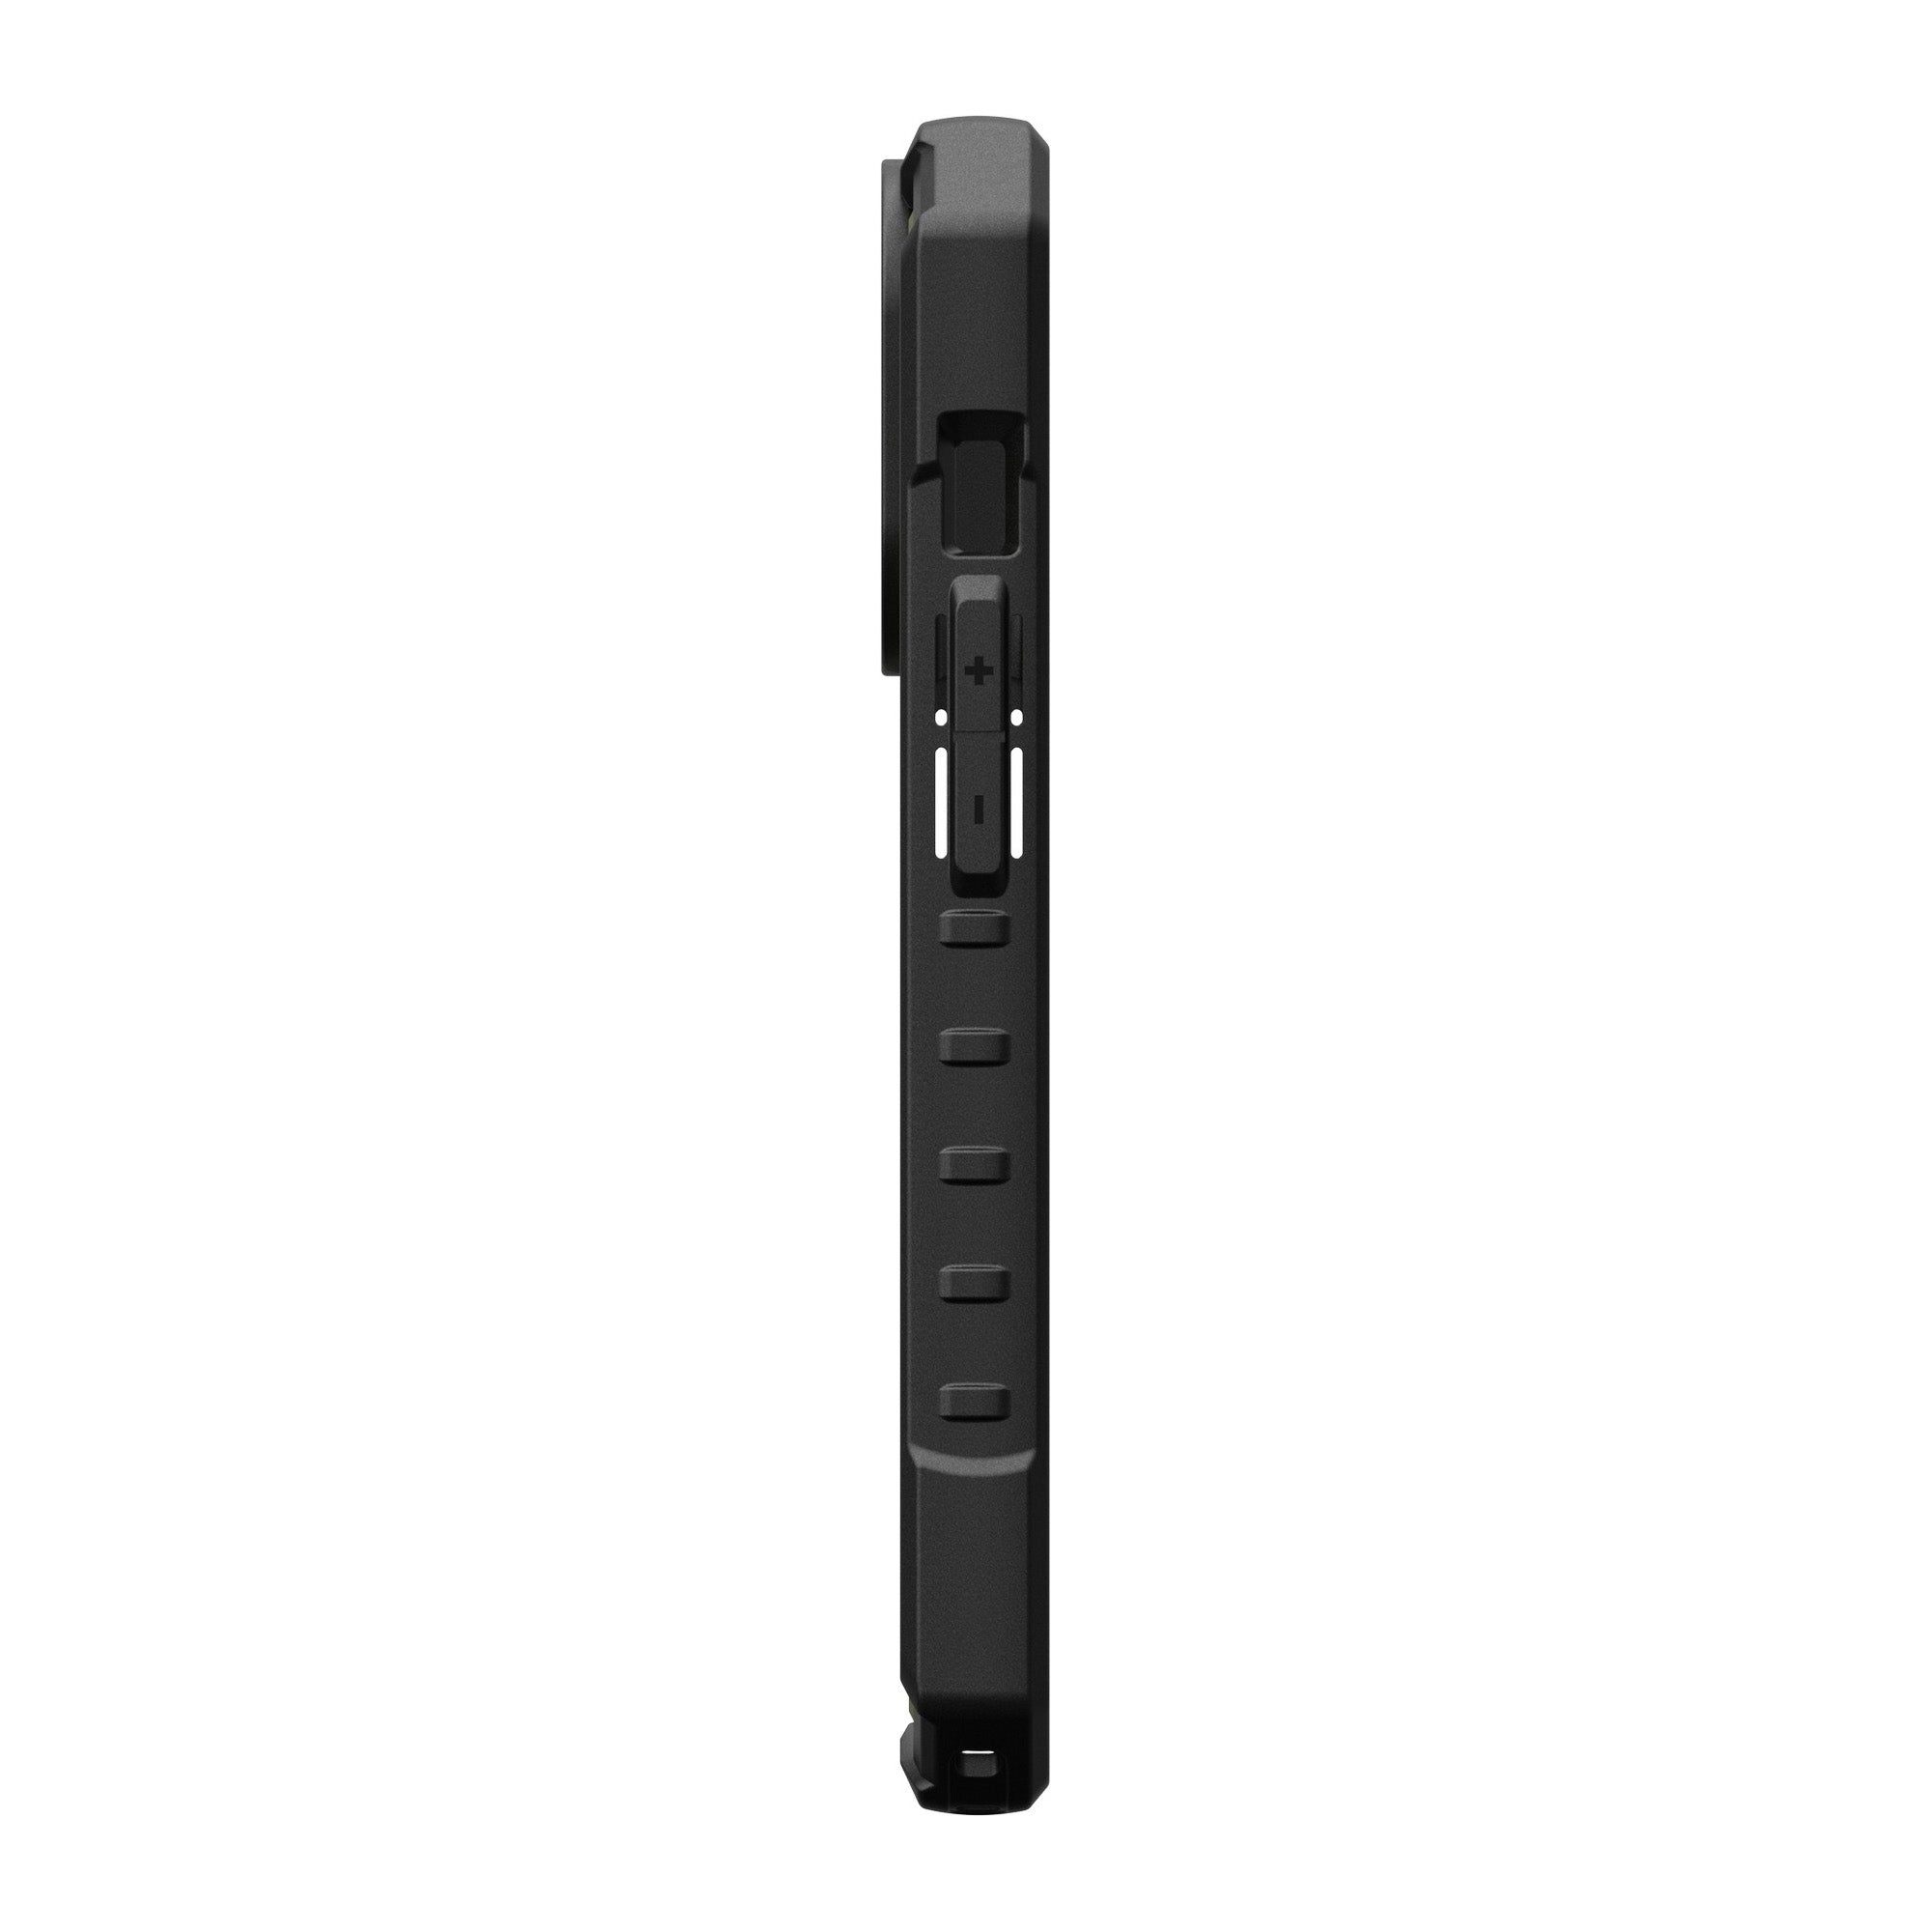 iPhone 15 Pro UAG Pathfinder MagSafe Case - Olive Drab - 15-11502